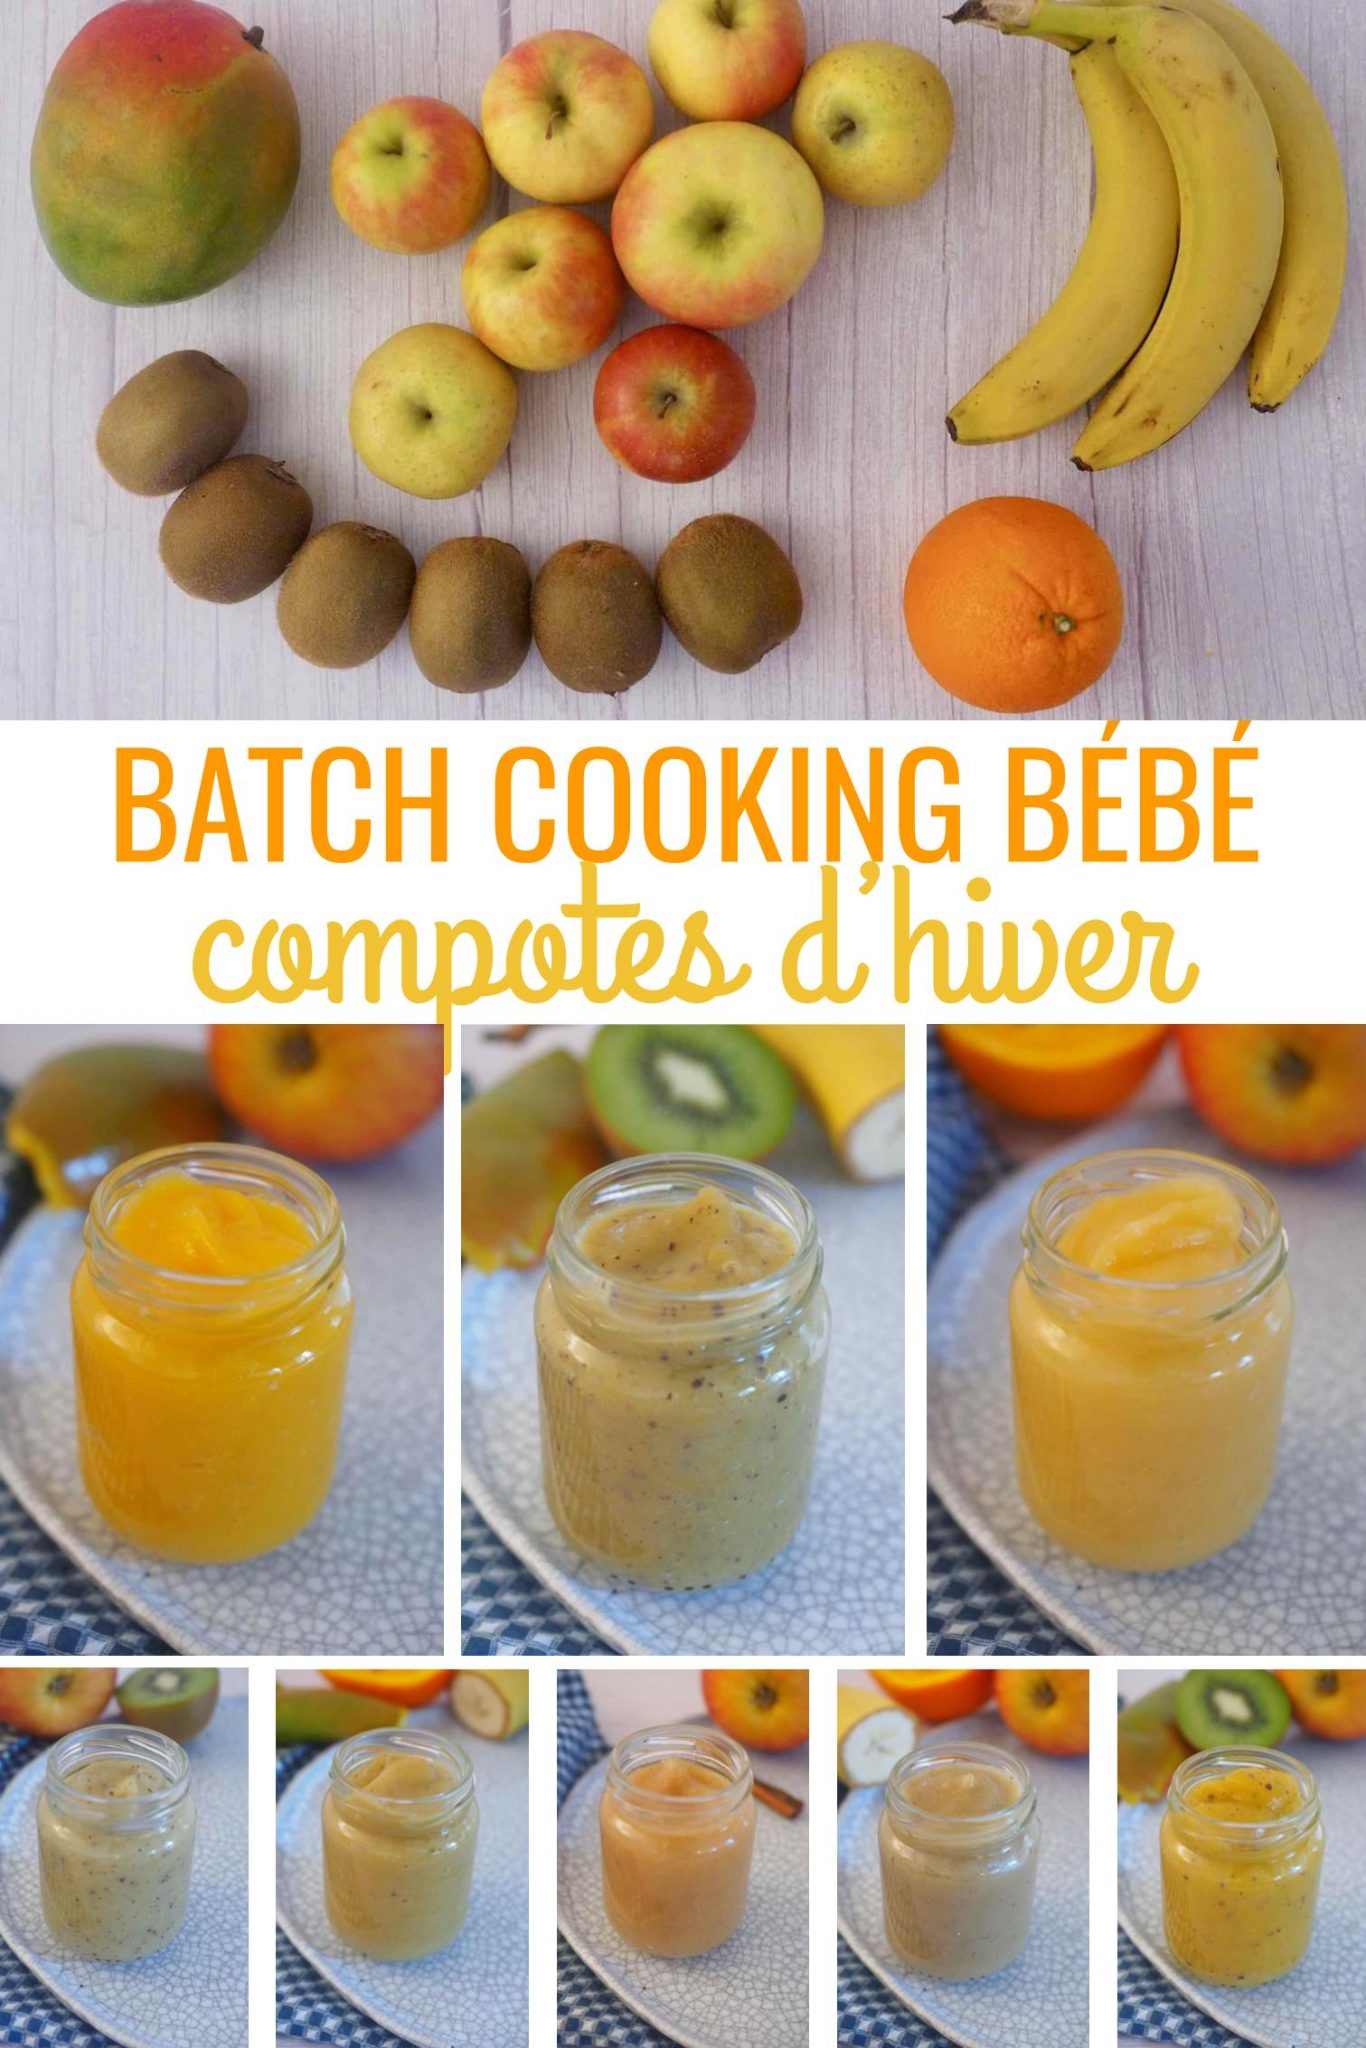 Batch cooking sucré : compotes de fruits d'hiver pour bébé